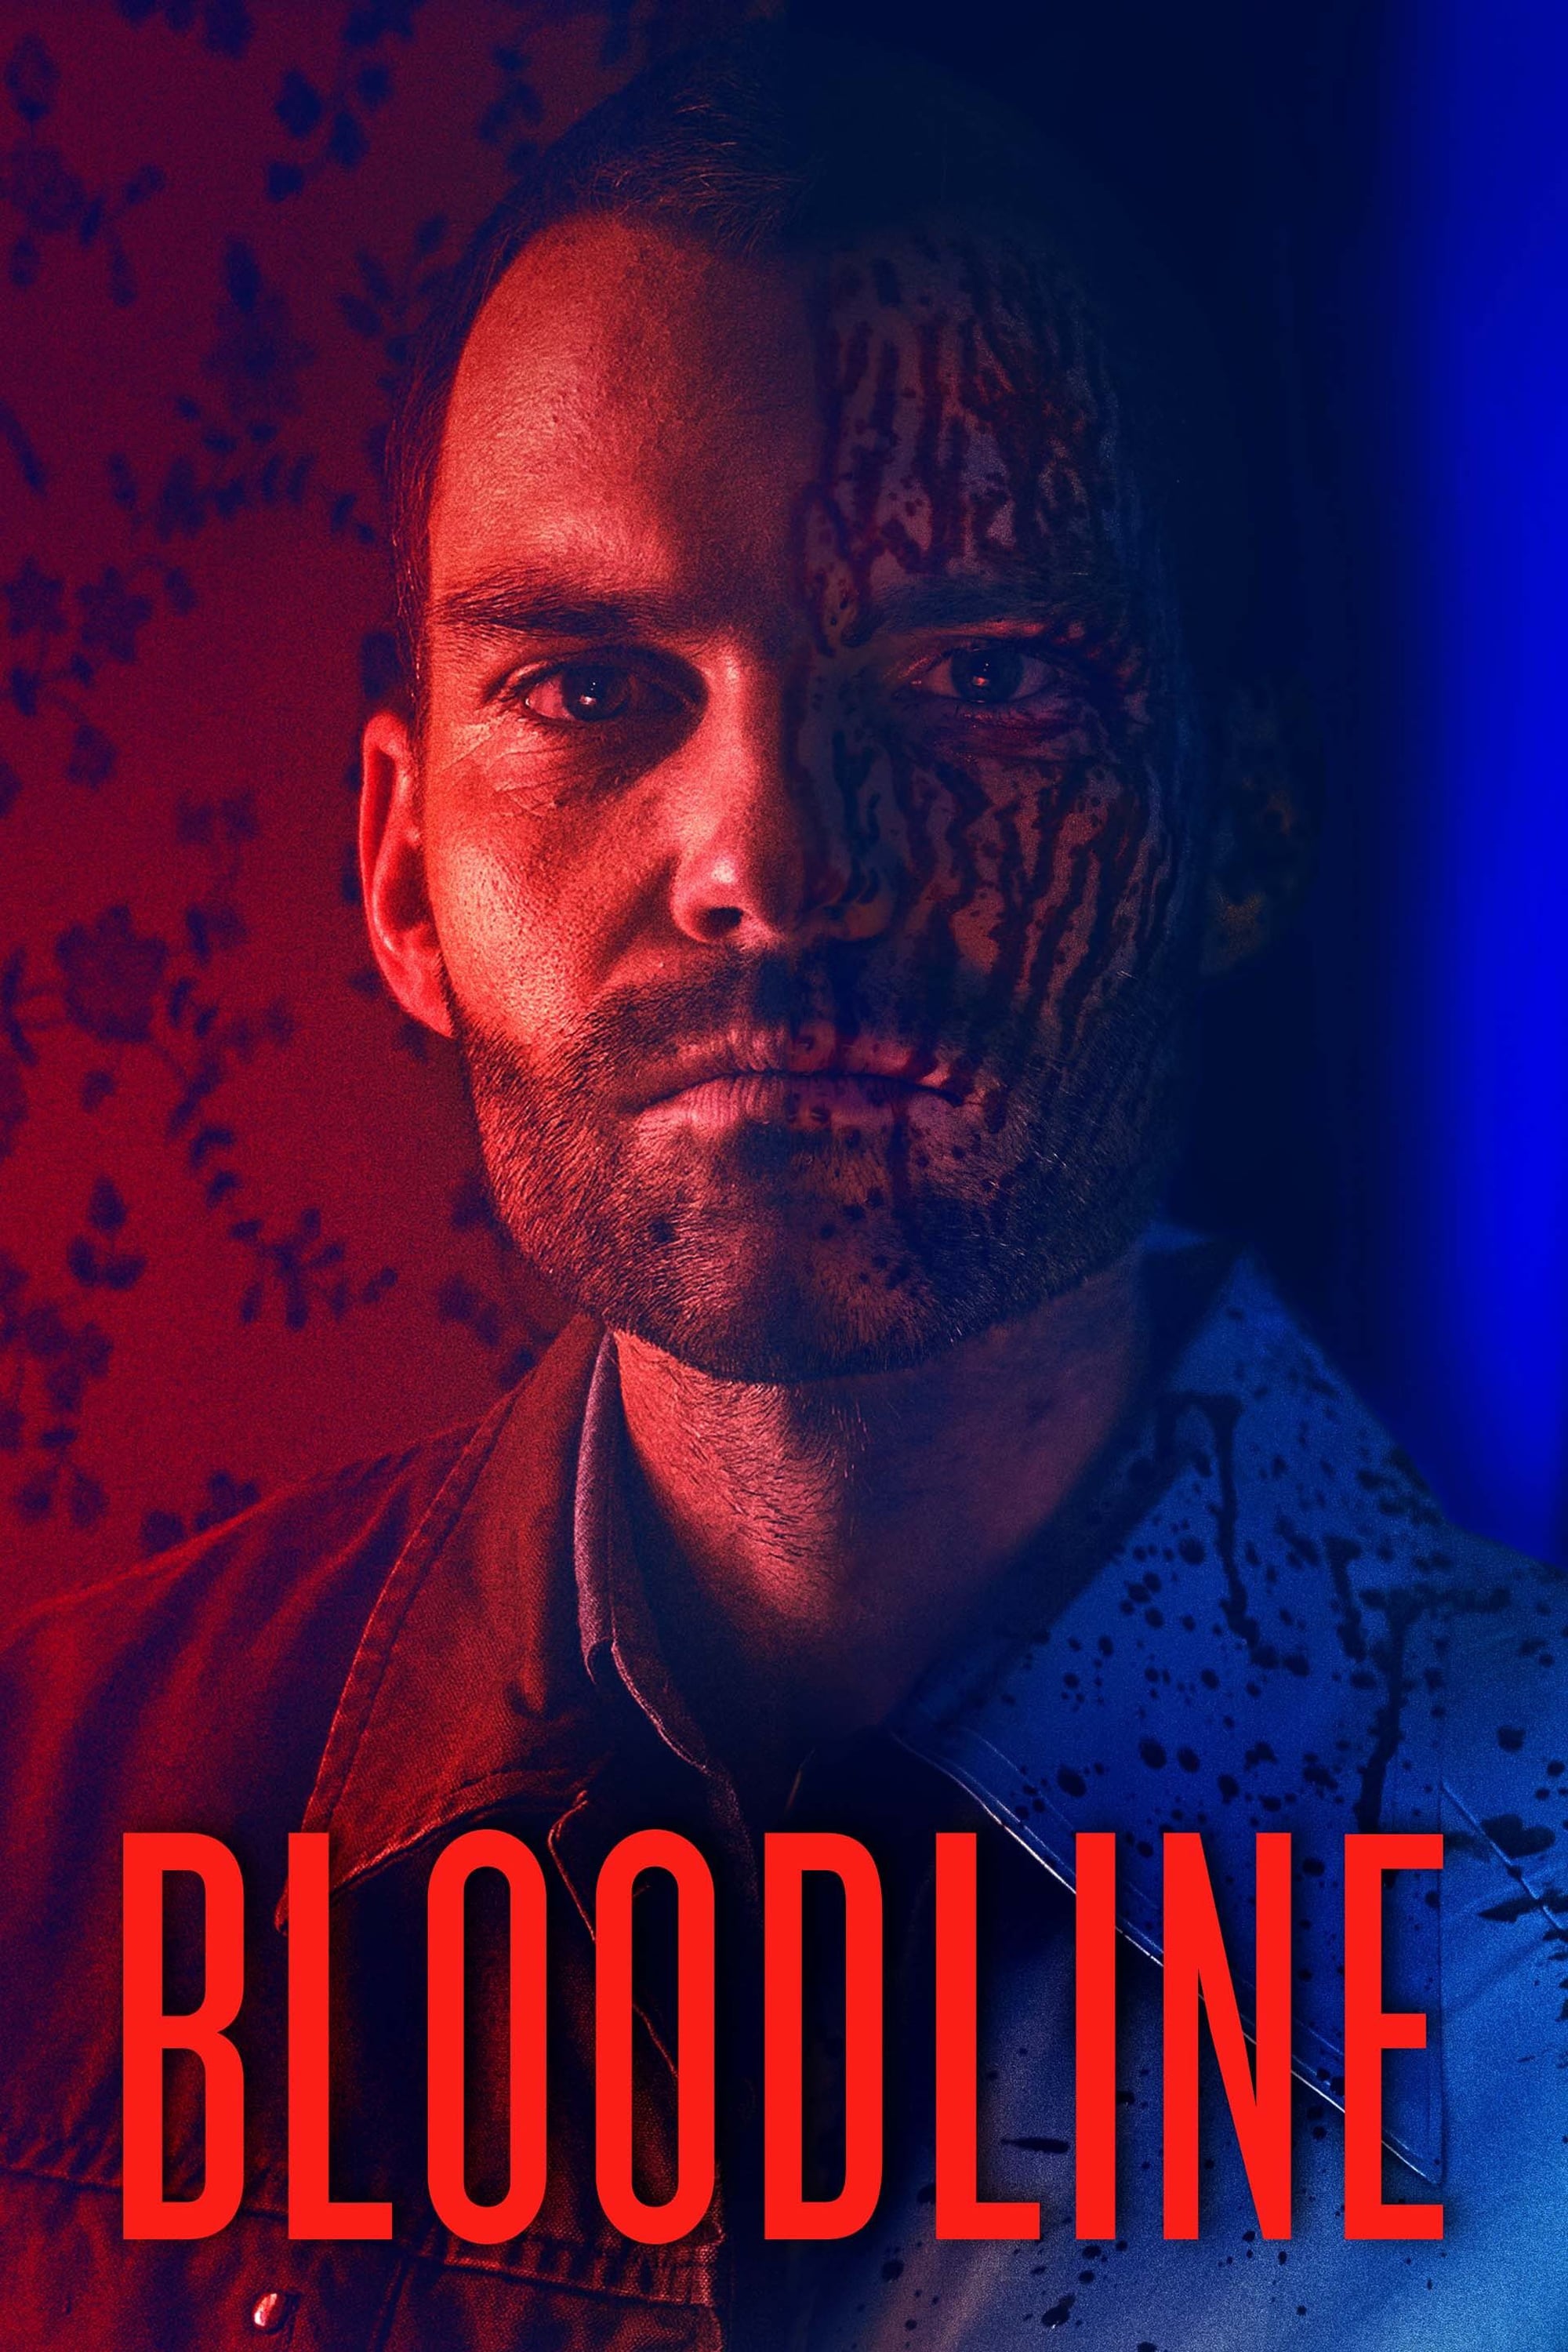 دانلود فیلم Bloodline 2019